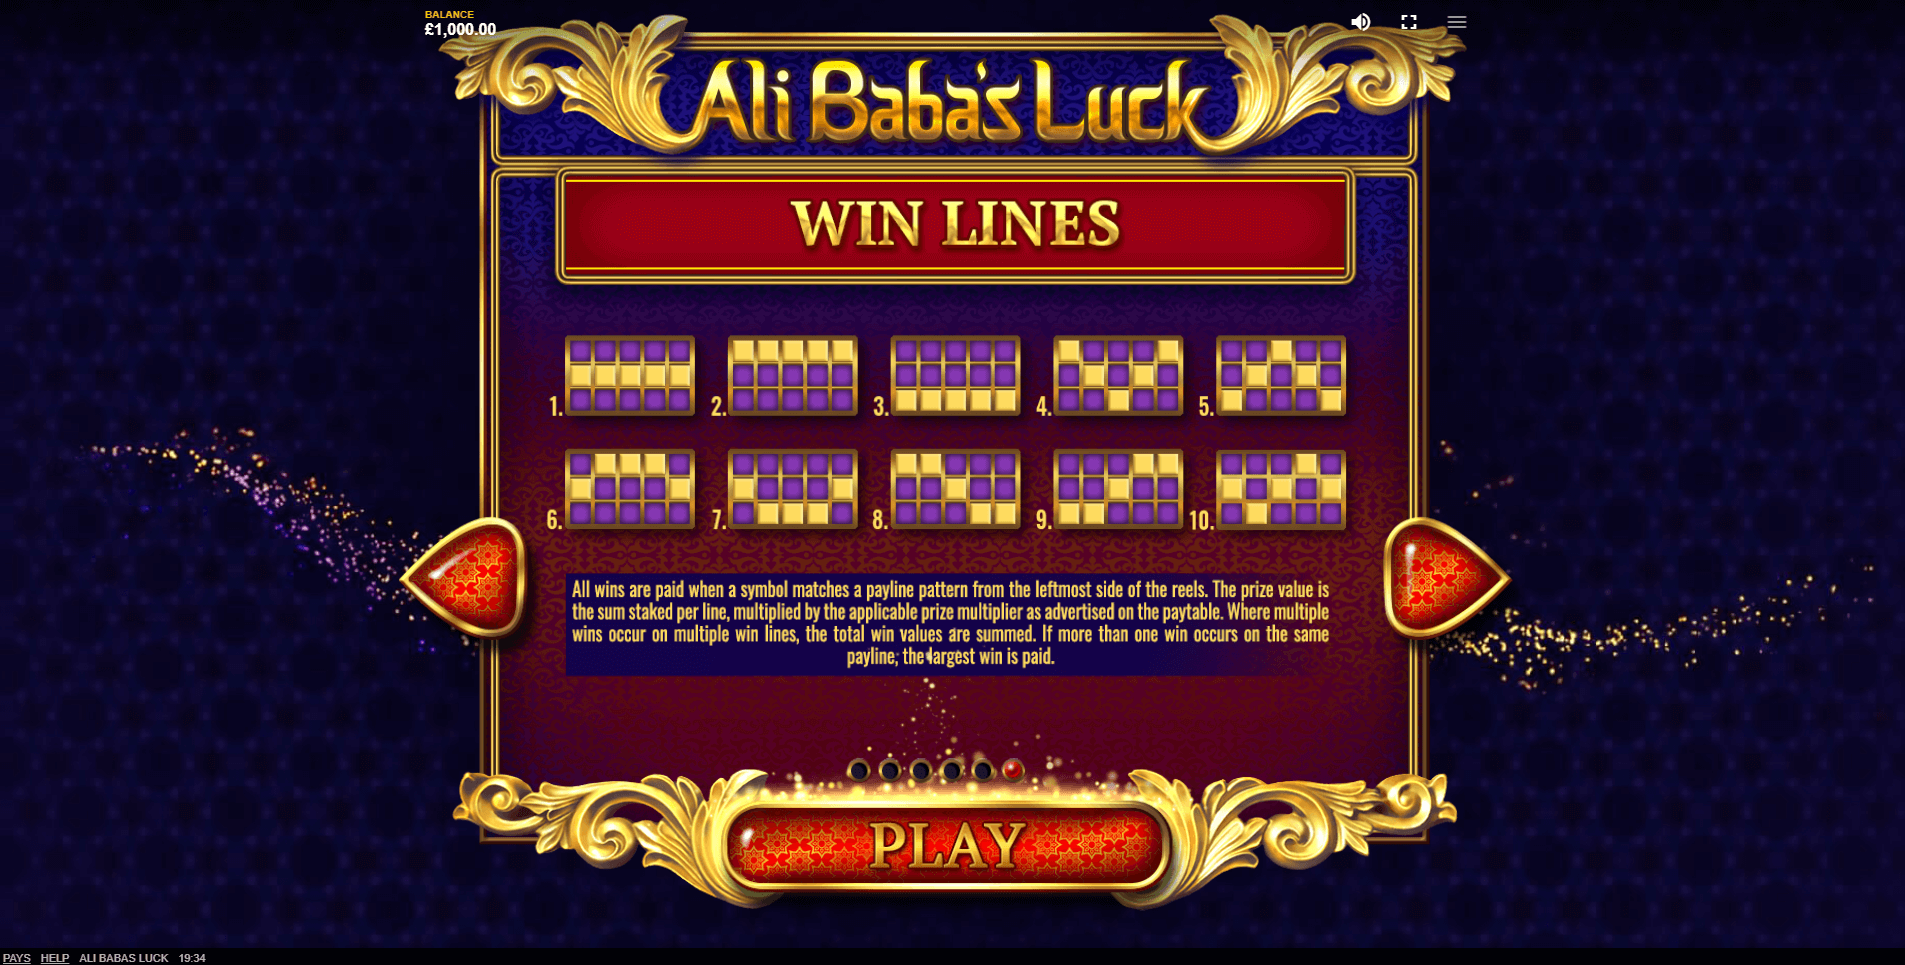 ali babas luck slot machine detail image 4